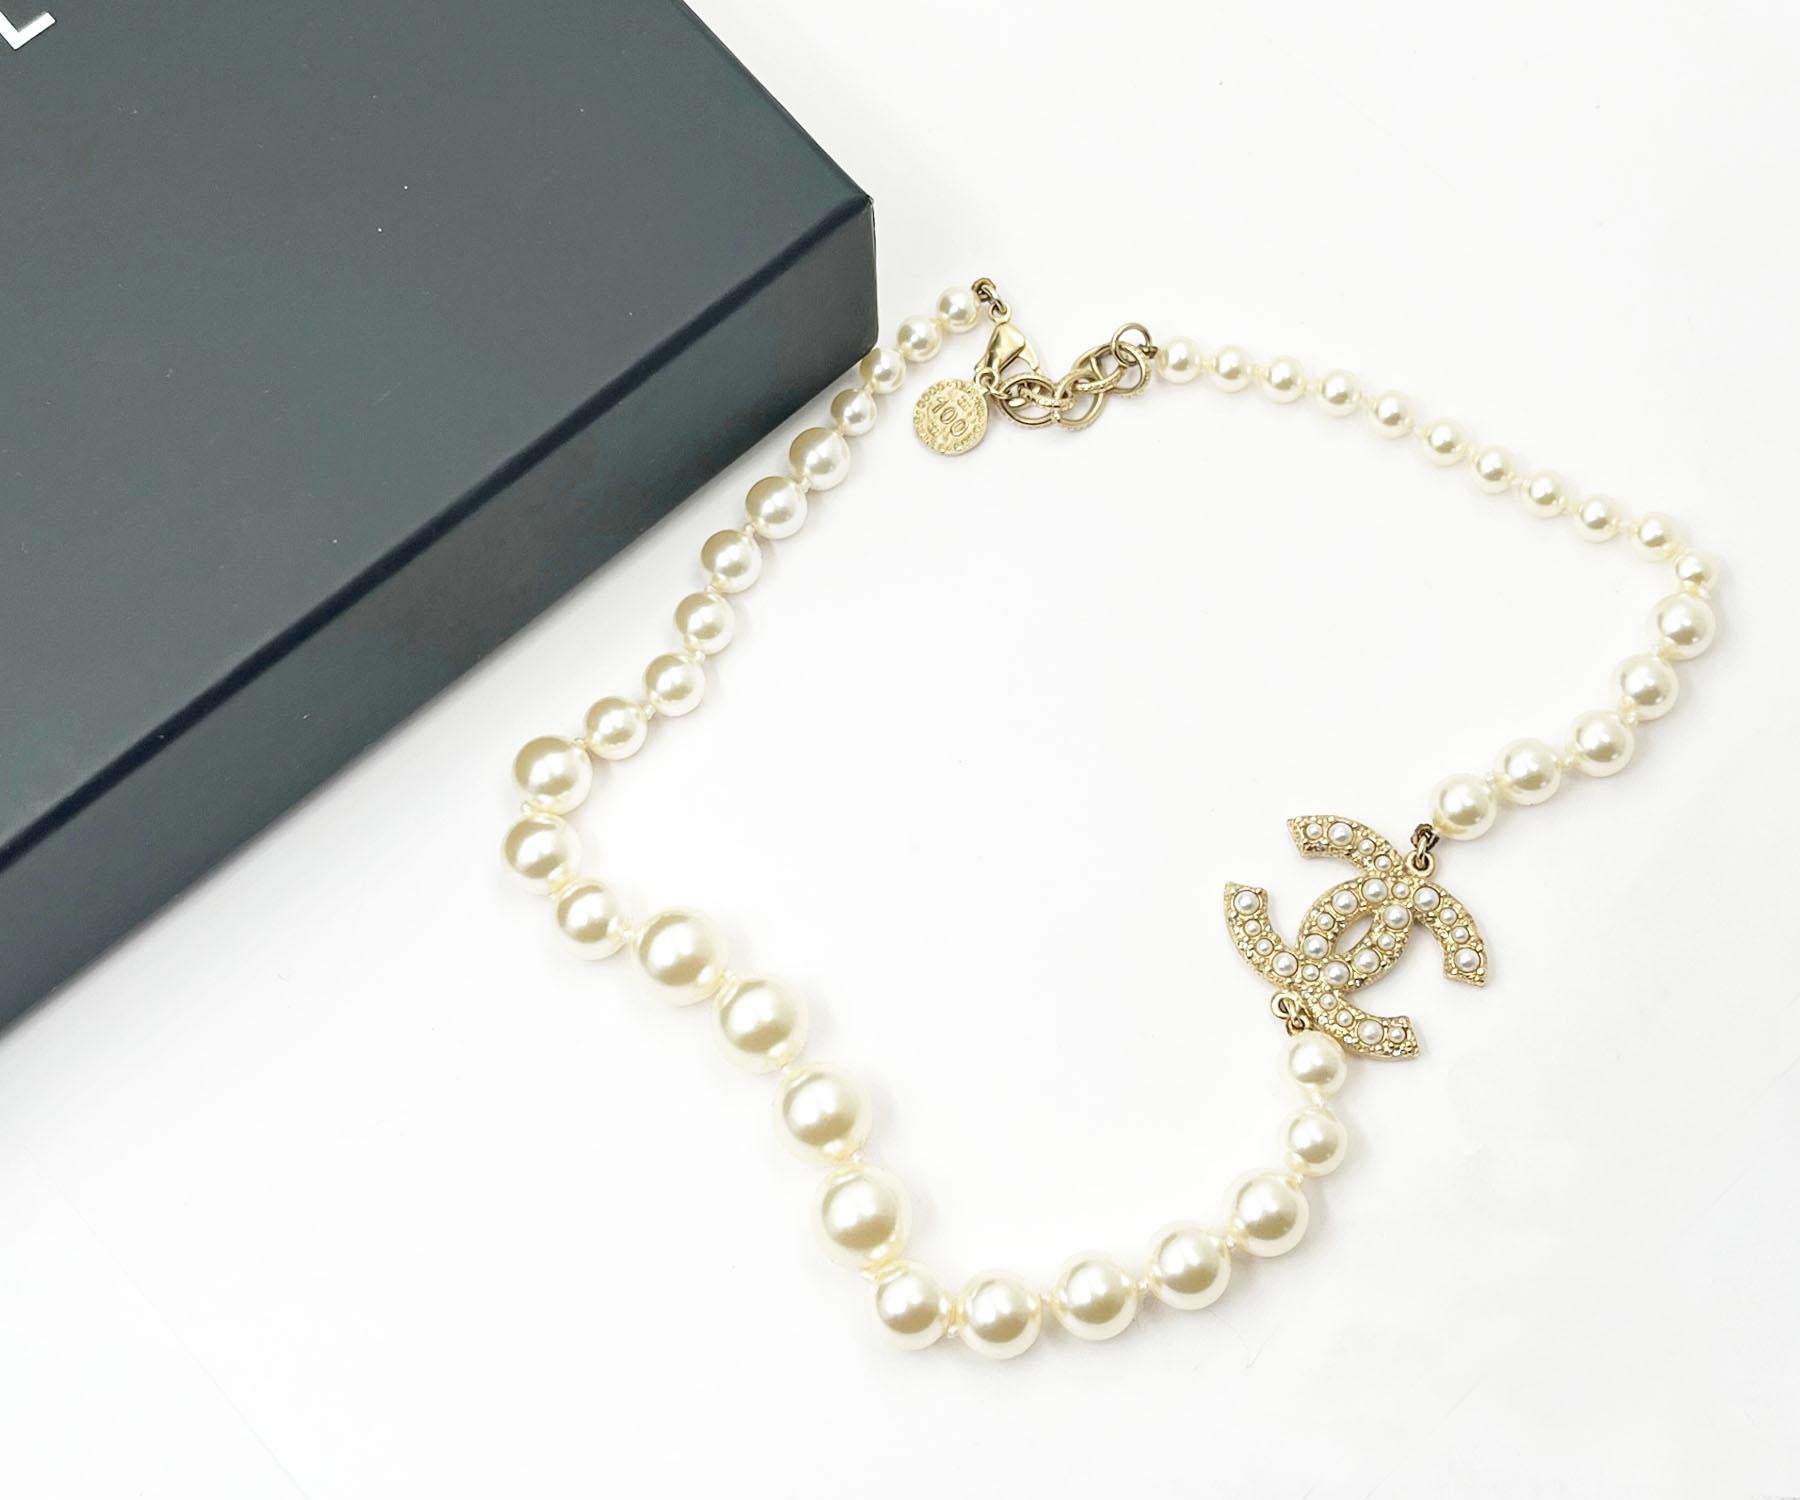 Chanel Gold CC Perle Kurze Perlenkette 100 Jahre Jahrestag

*Markierung 21
*Hergestellt in Frankreich
*Wird mit der Originalverpackung und dem Etui geliefert.

-Er ist ungefähr 18